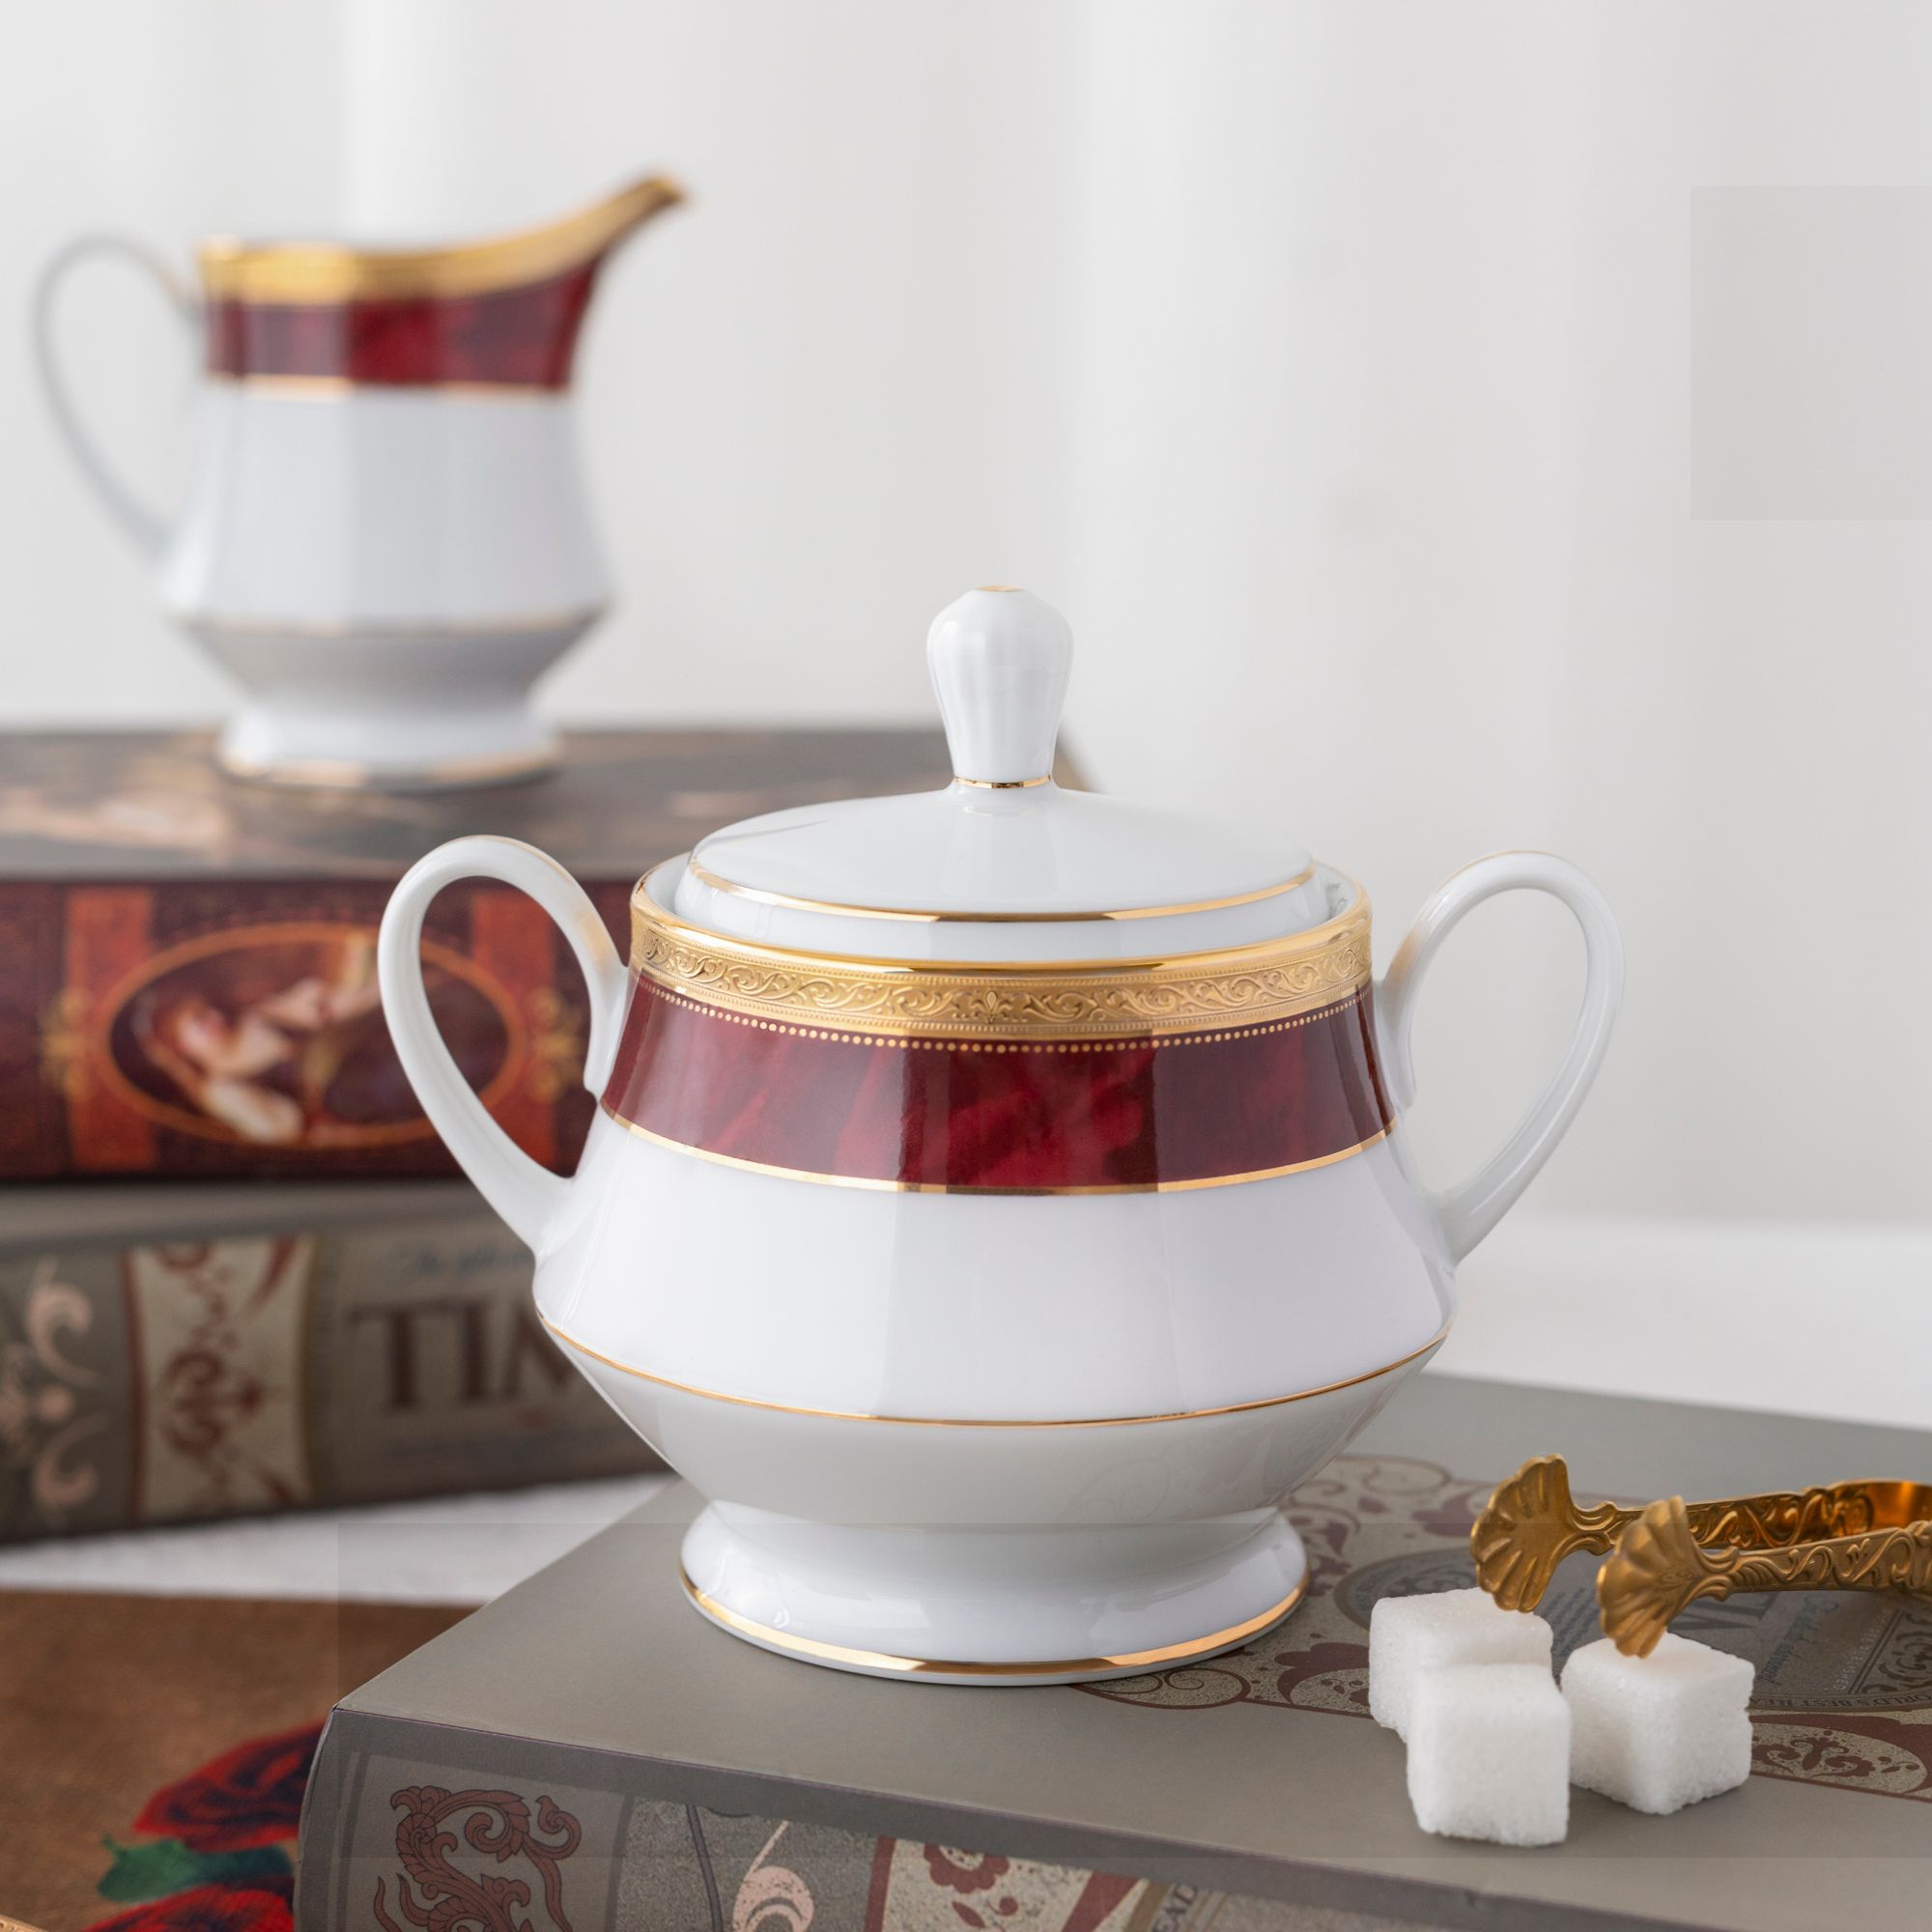  Bộ ấm chén uống trà 15 món | MAJESTIC BURGUN  M-166L-T017A 